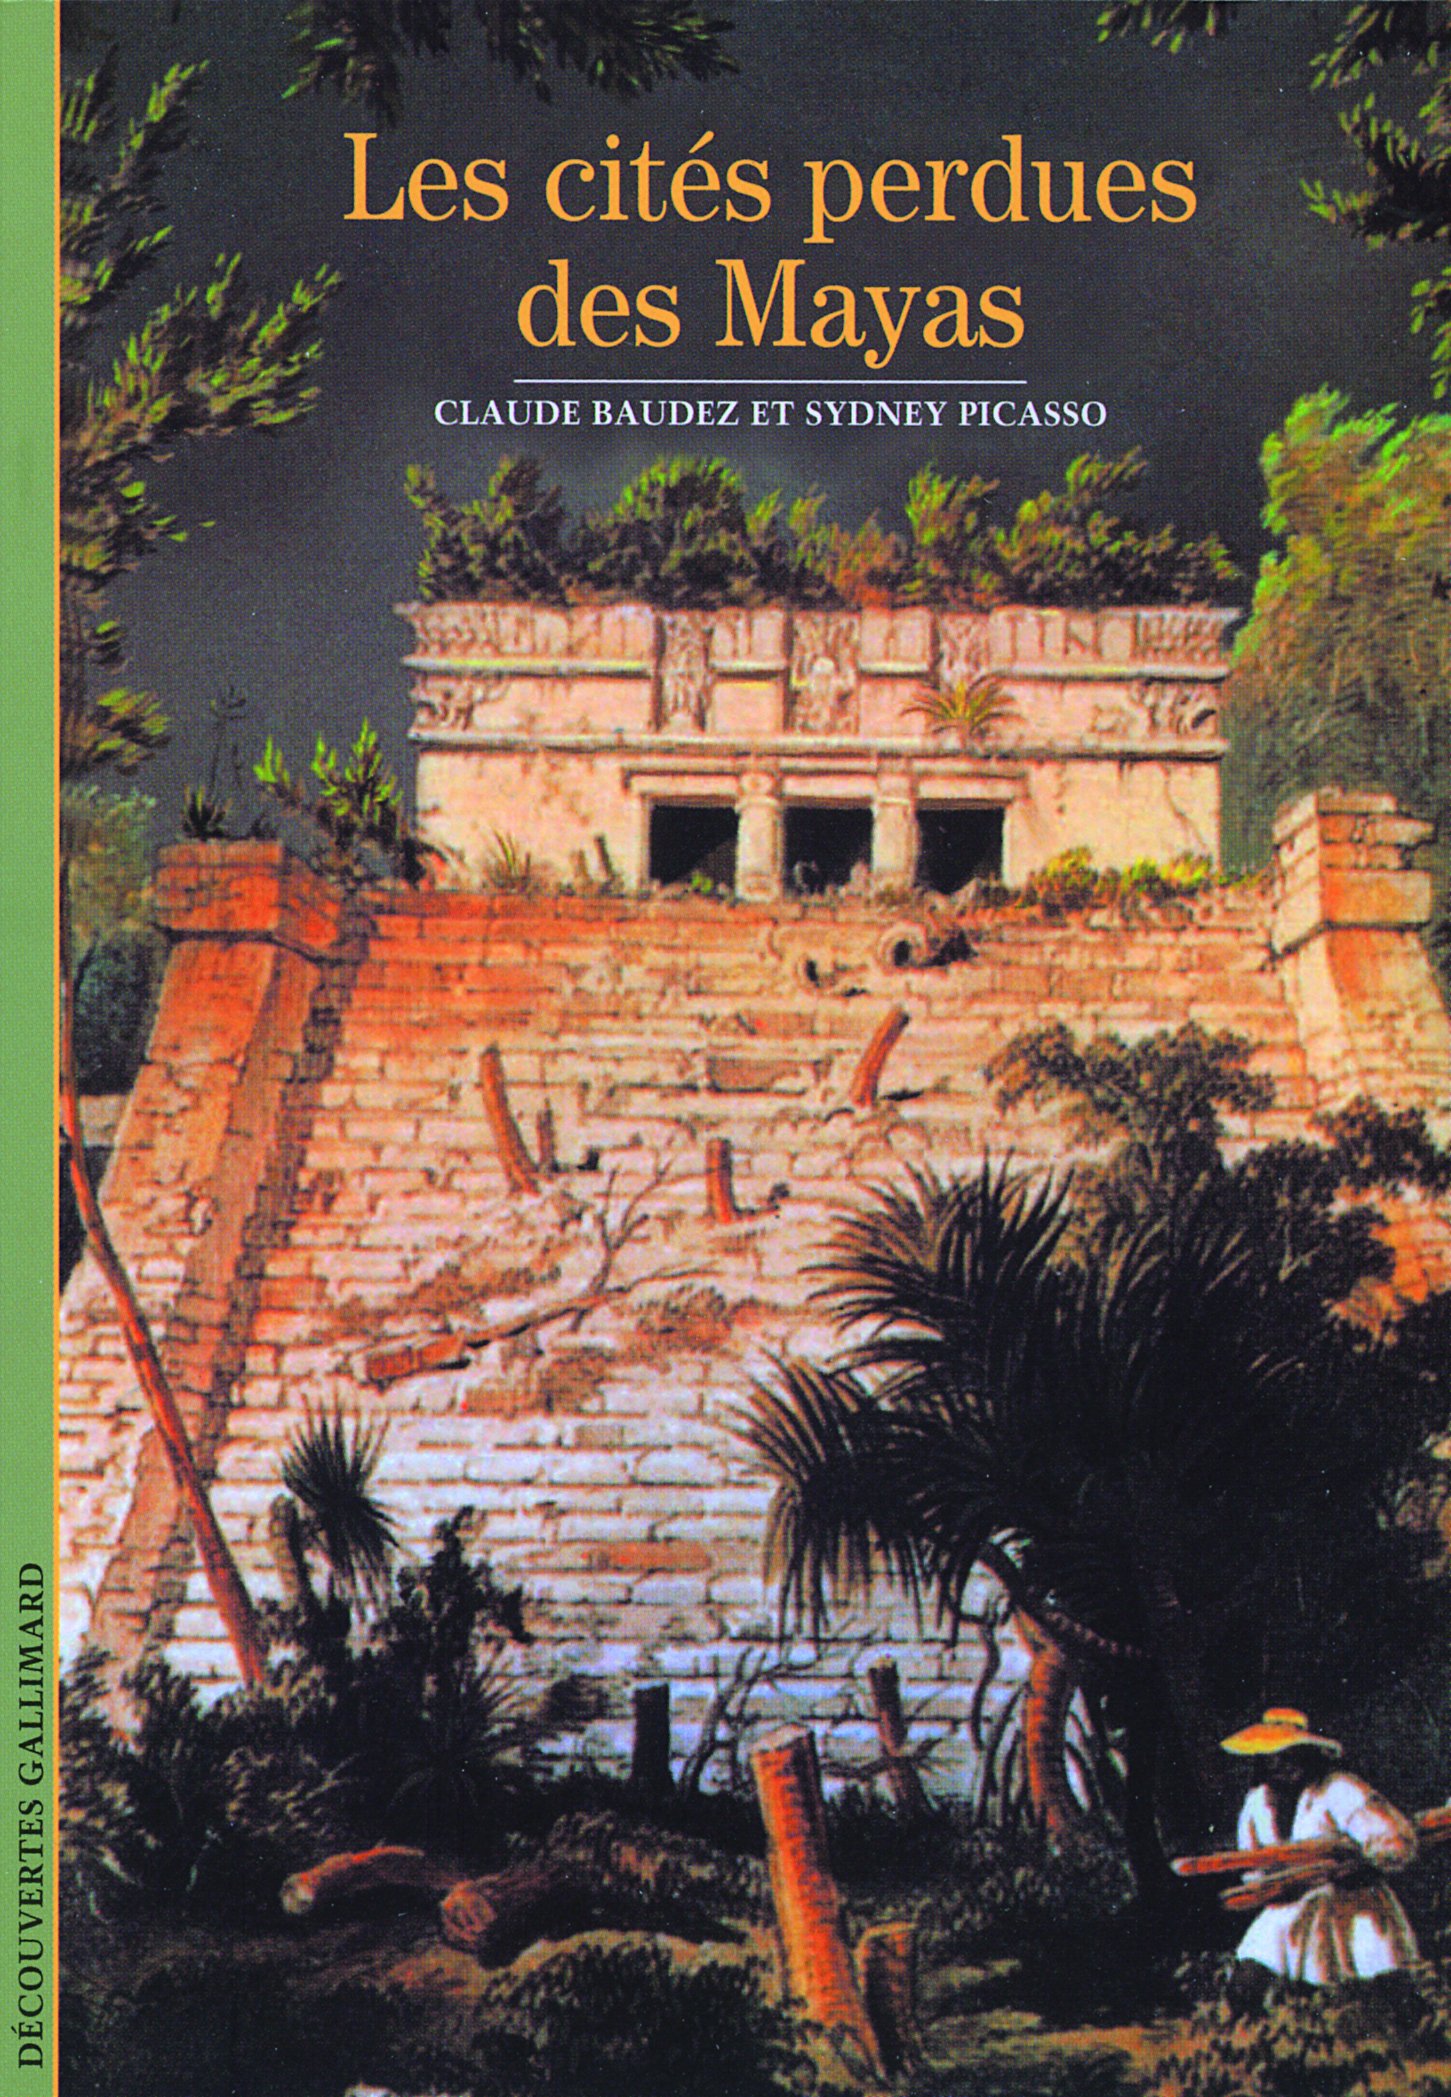 Les cités perdues des Mayas, (coll. Découvertes), 2008, 175 p.